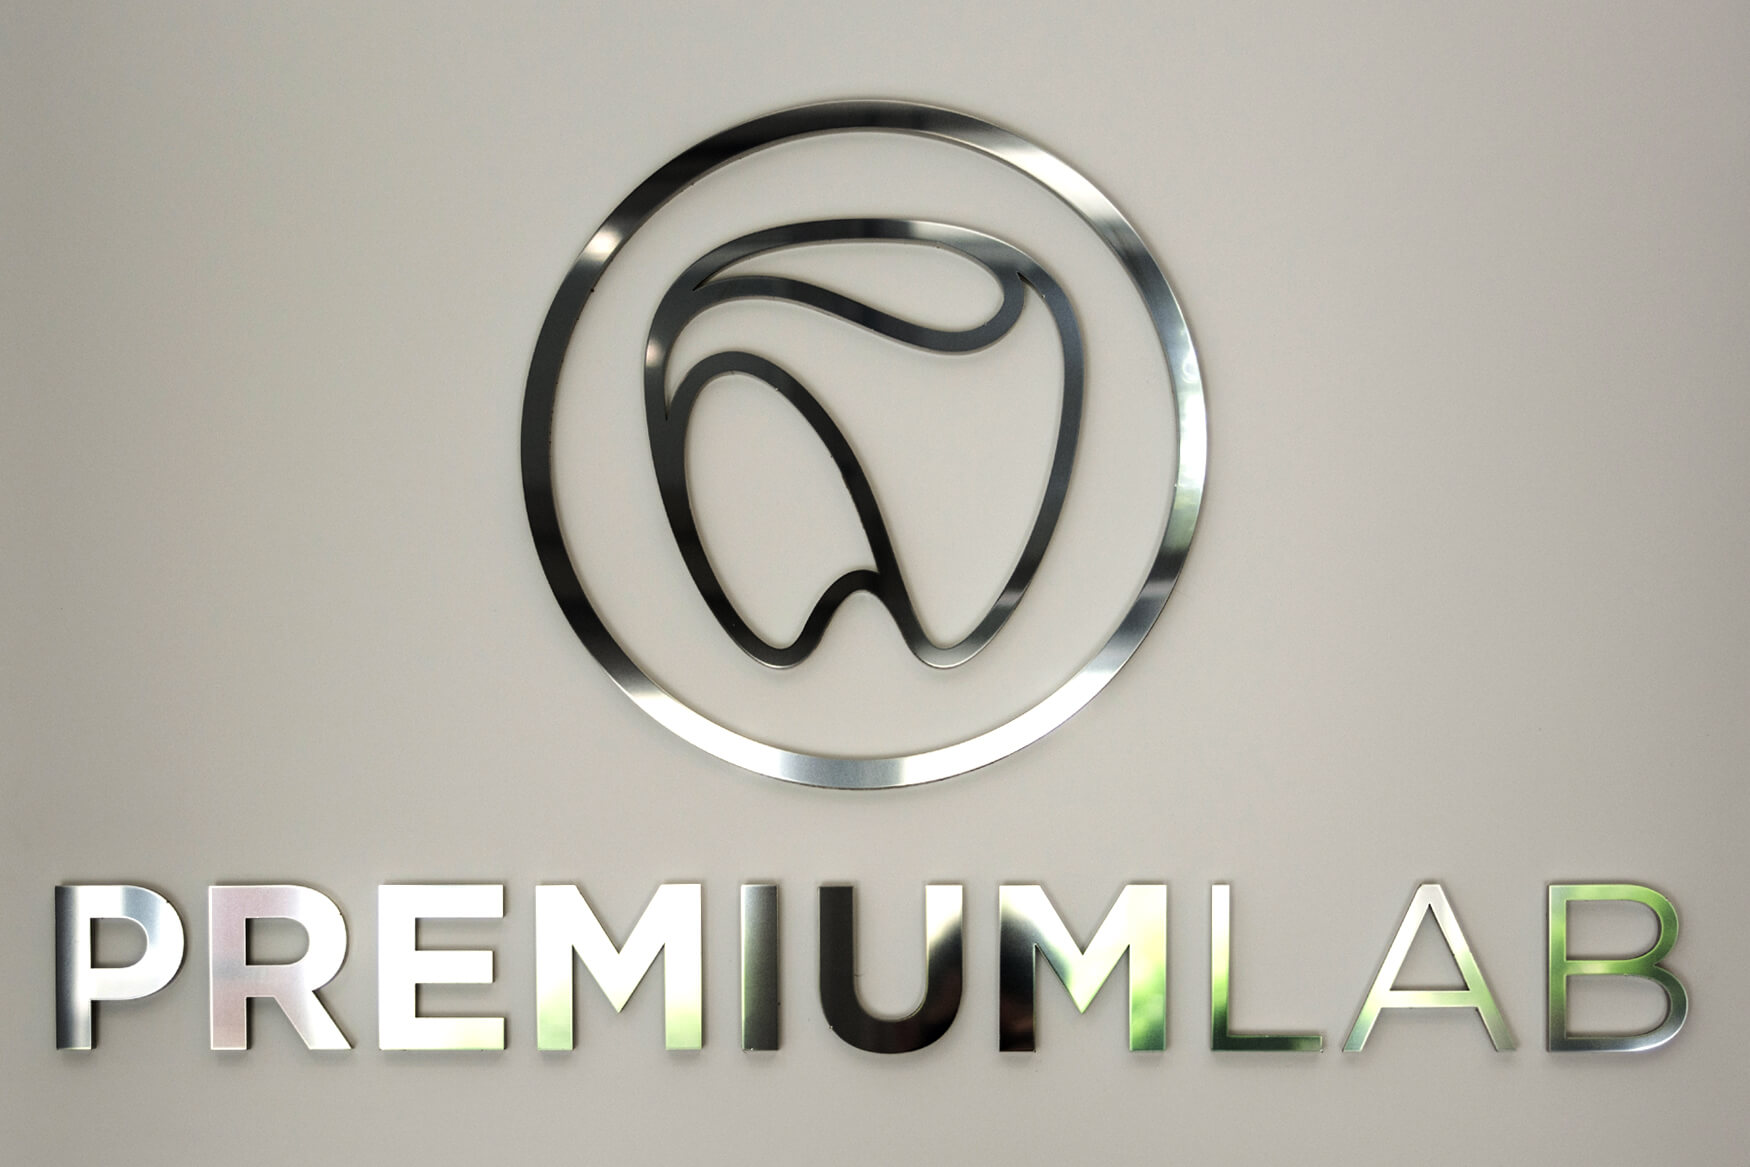 Premiumlab - Premiumlab - logo et lettres en 3D en plexiglas et acier inoxydable poli placés dans le hall d'accueil